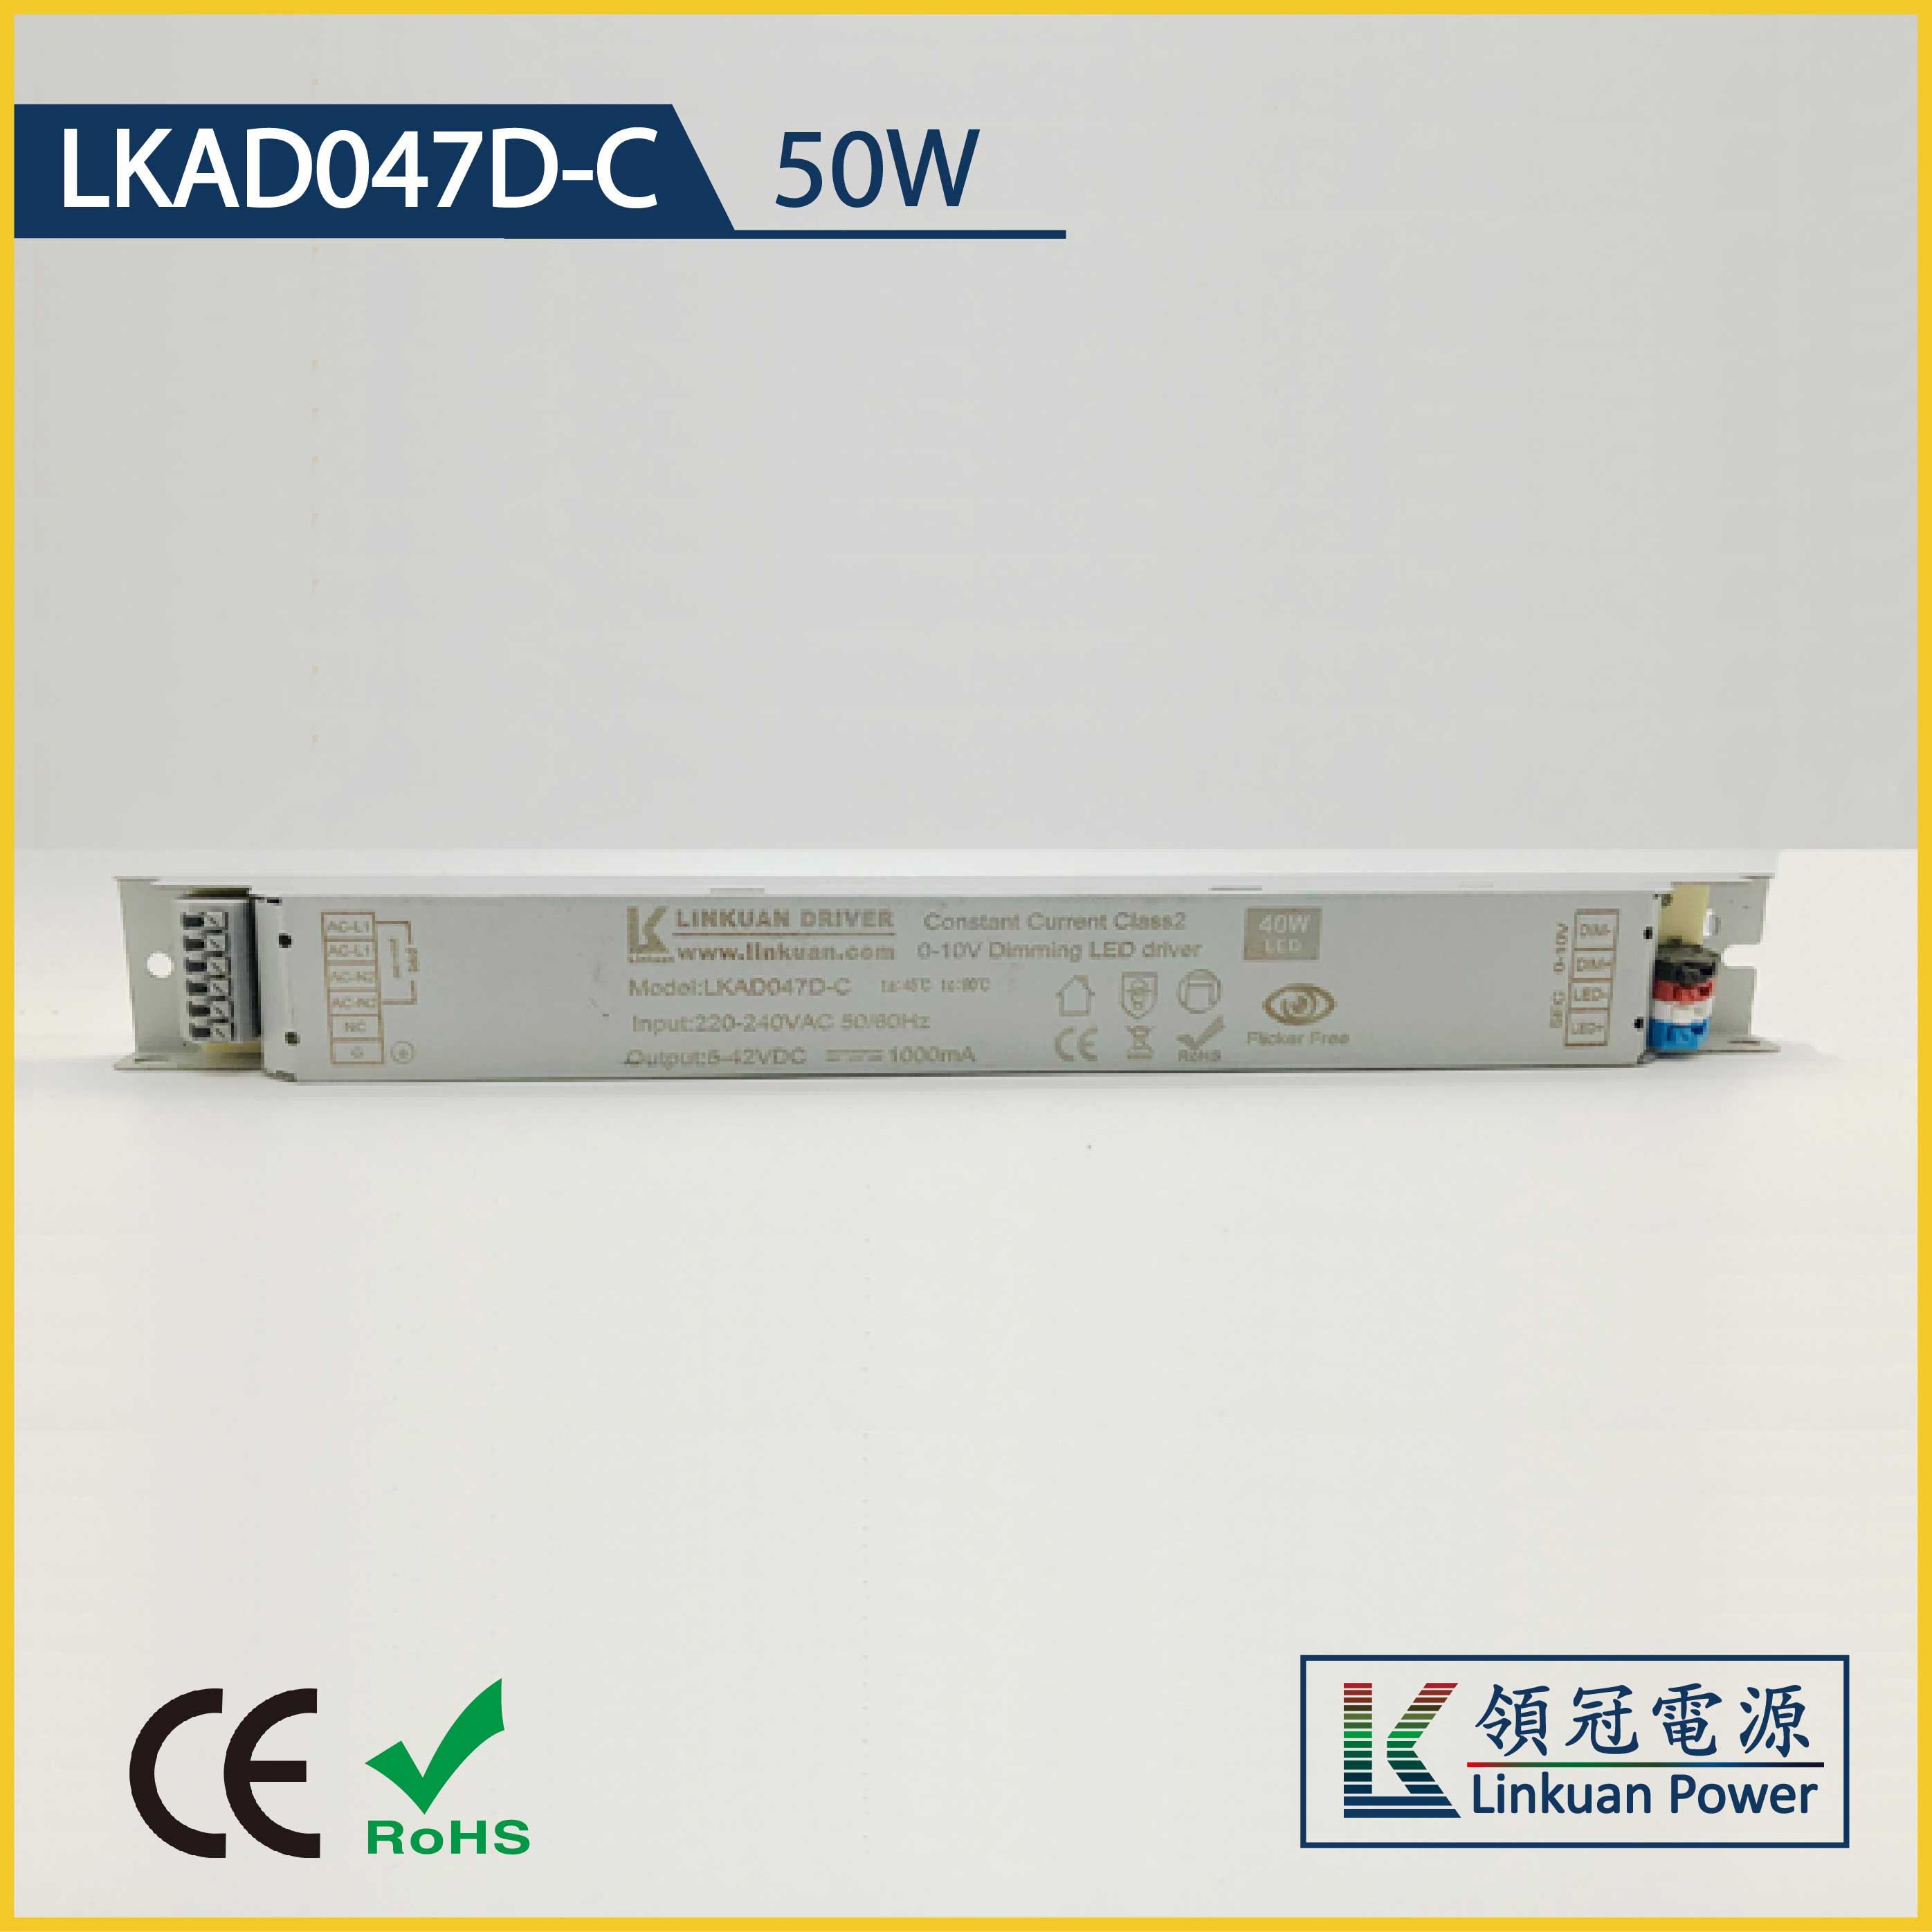 LKAD047D-C 50W 10-42V 1200mA Linear Lamp 0-10V dimming  led driver